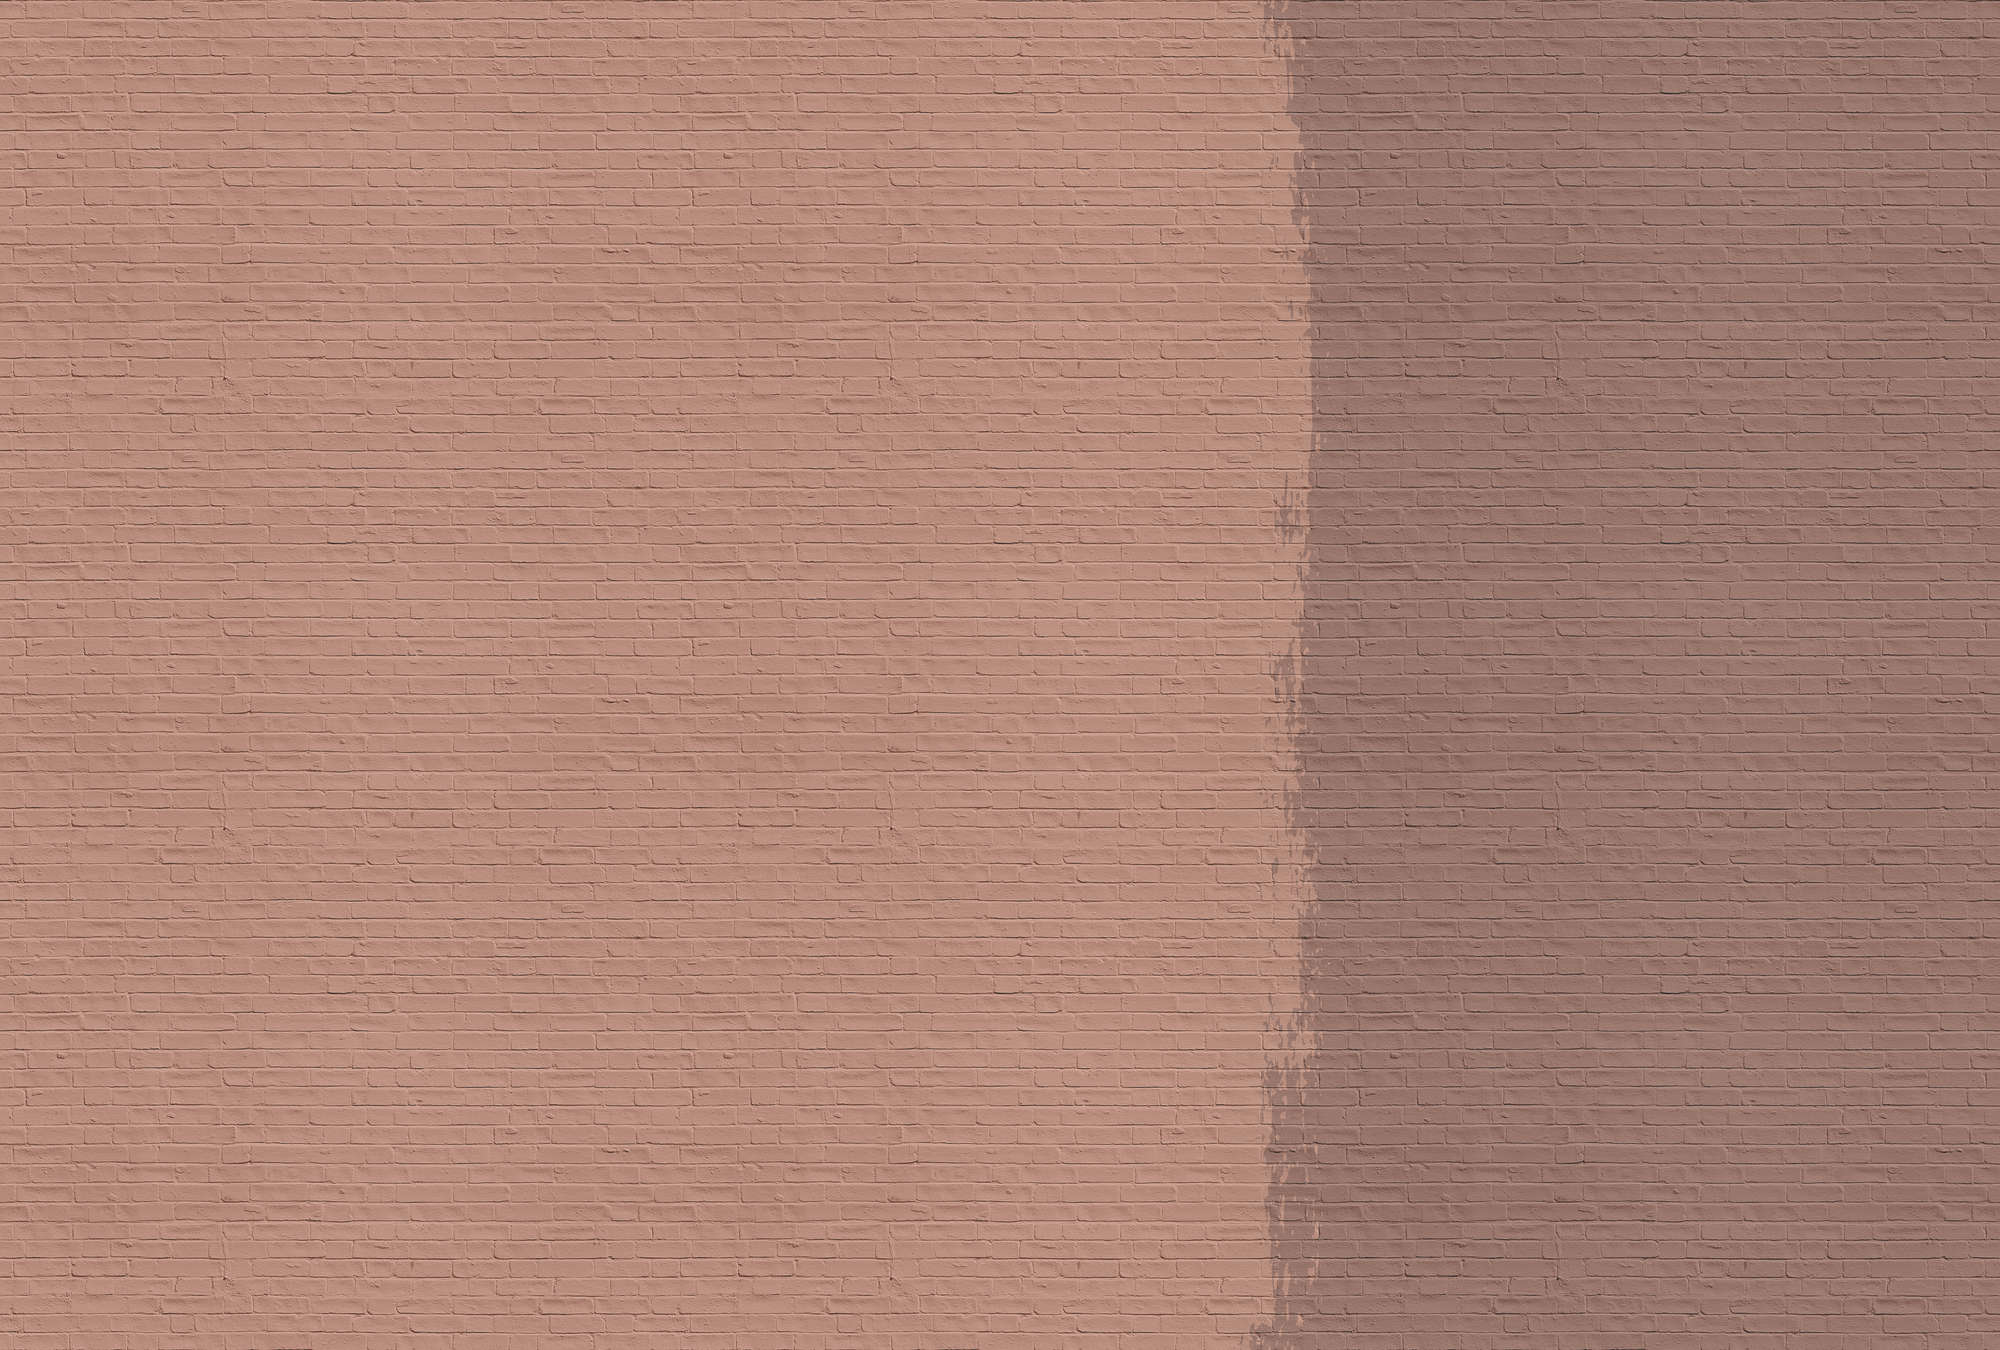             Tainted love 3 - mur de briques papier peint rouge-brun - cuivre, orange | Intissé lisse mat
        